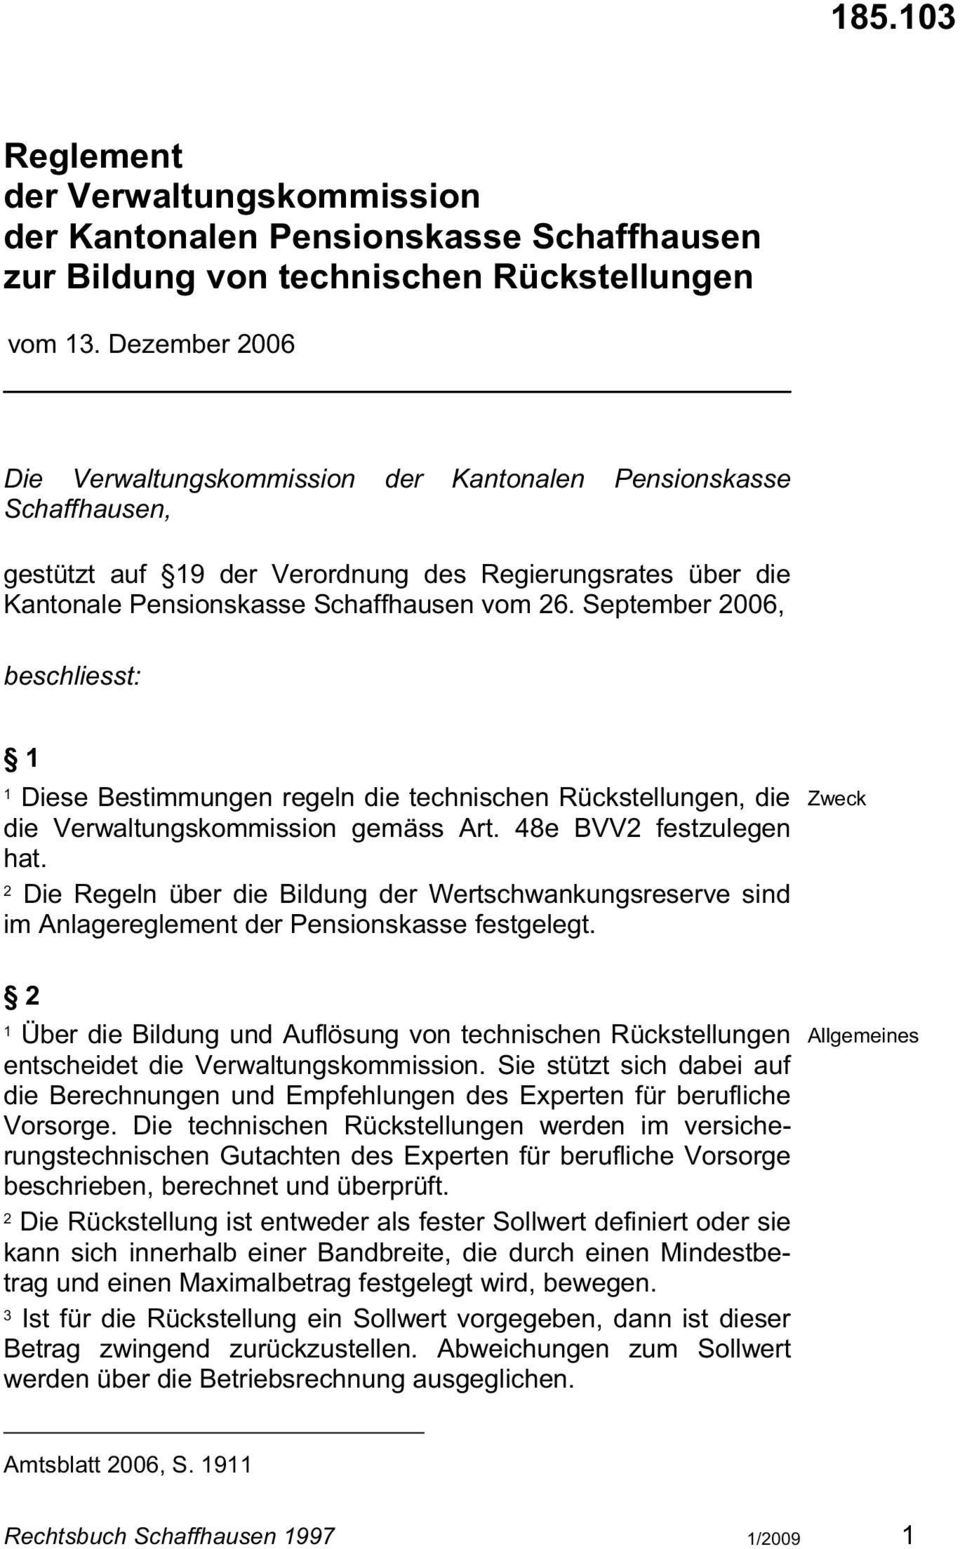 September 006, beschliesst: Diese Bestimmungen regeln die technischen Rückstellungen, die die Verwaltungskommission gemäss Art. 48e BVV festzulegen hat.